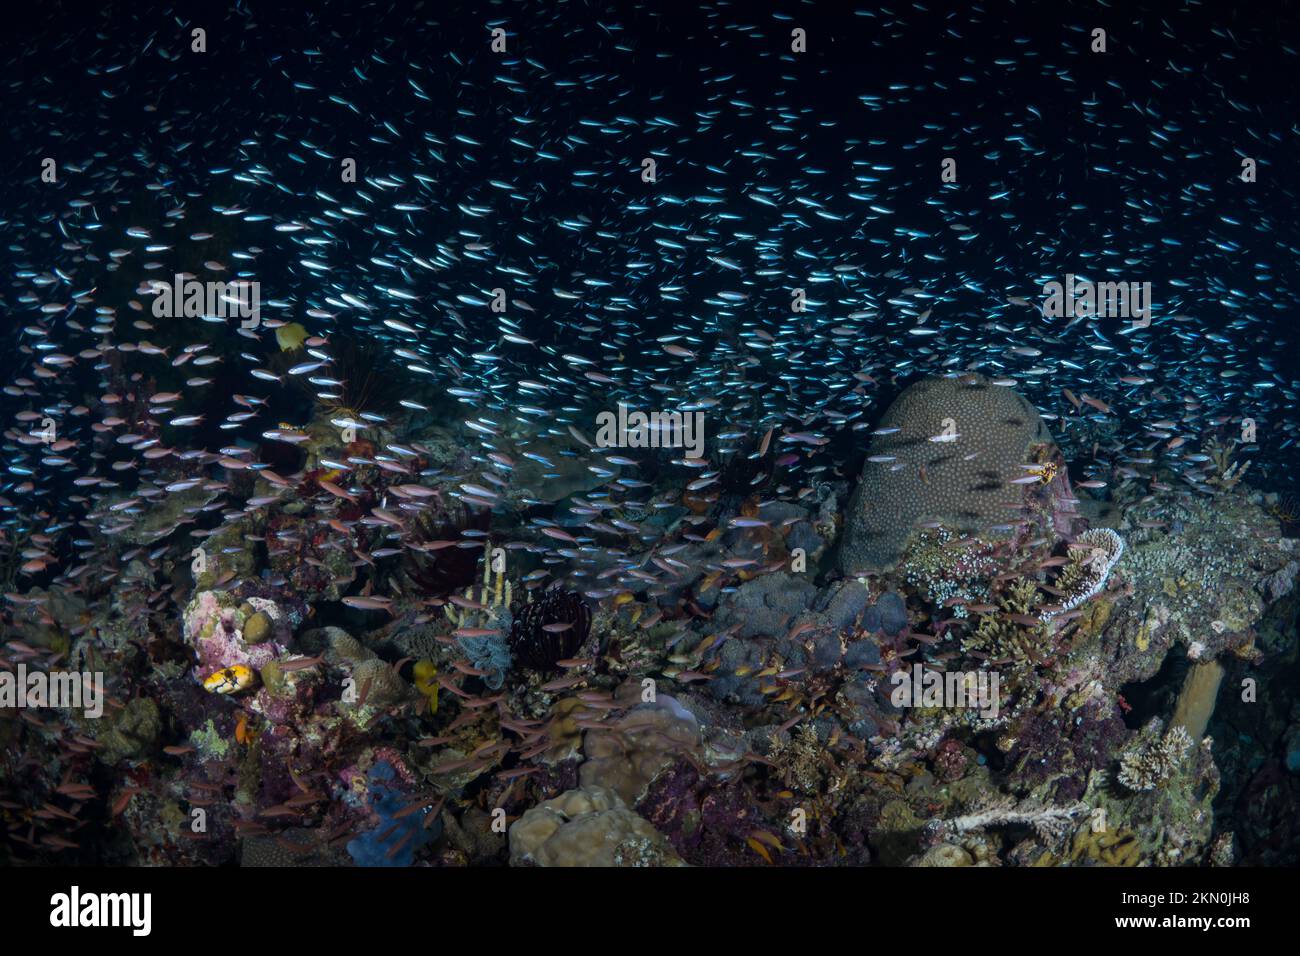 Ultimative Artenvielfalt des Indo-pazifiks mit tropischen Fischen über einem gesunden und reichlich vorhandenen Korallenriff-Ökosystem. Stockfoto